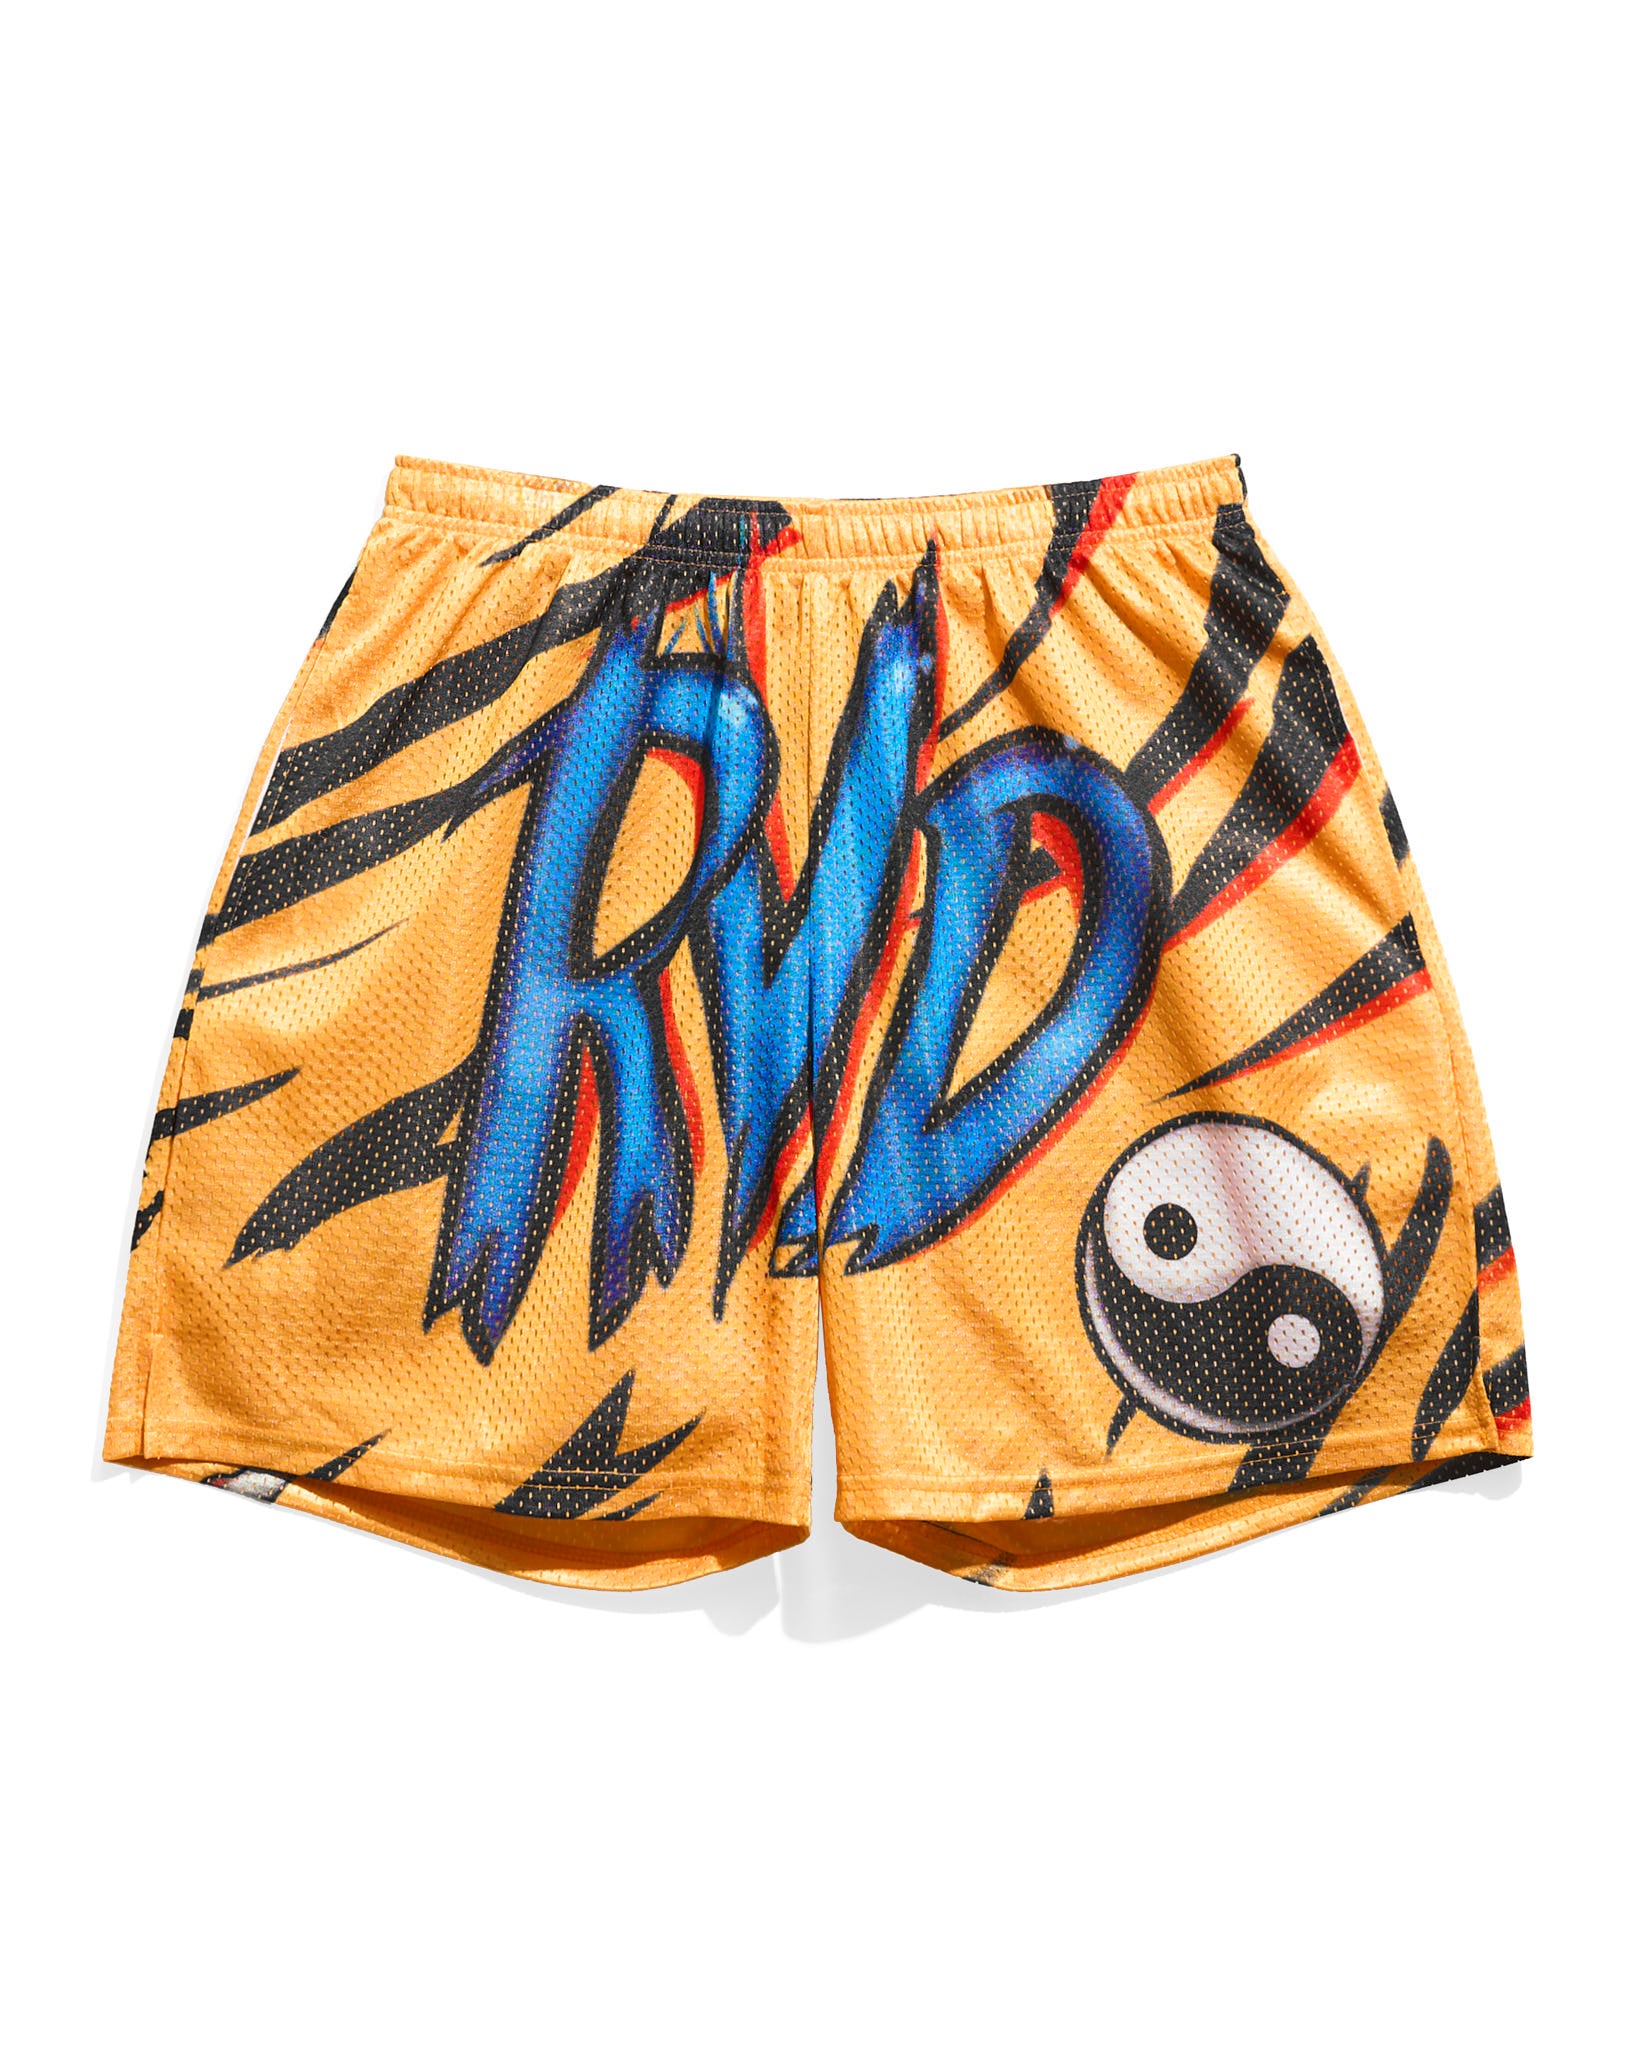 RVD Tiger Retro Shorts